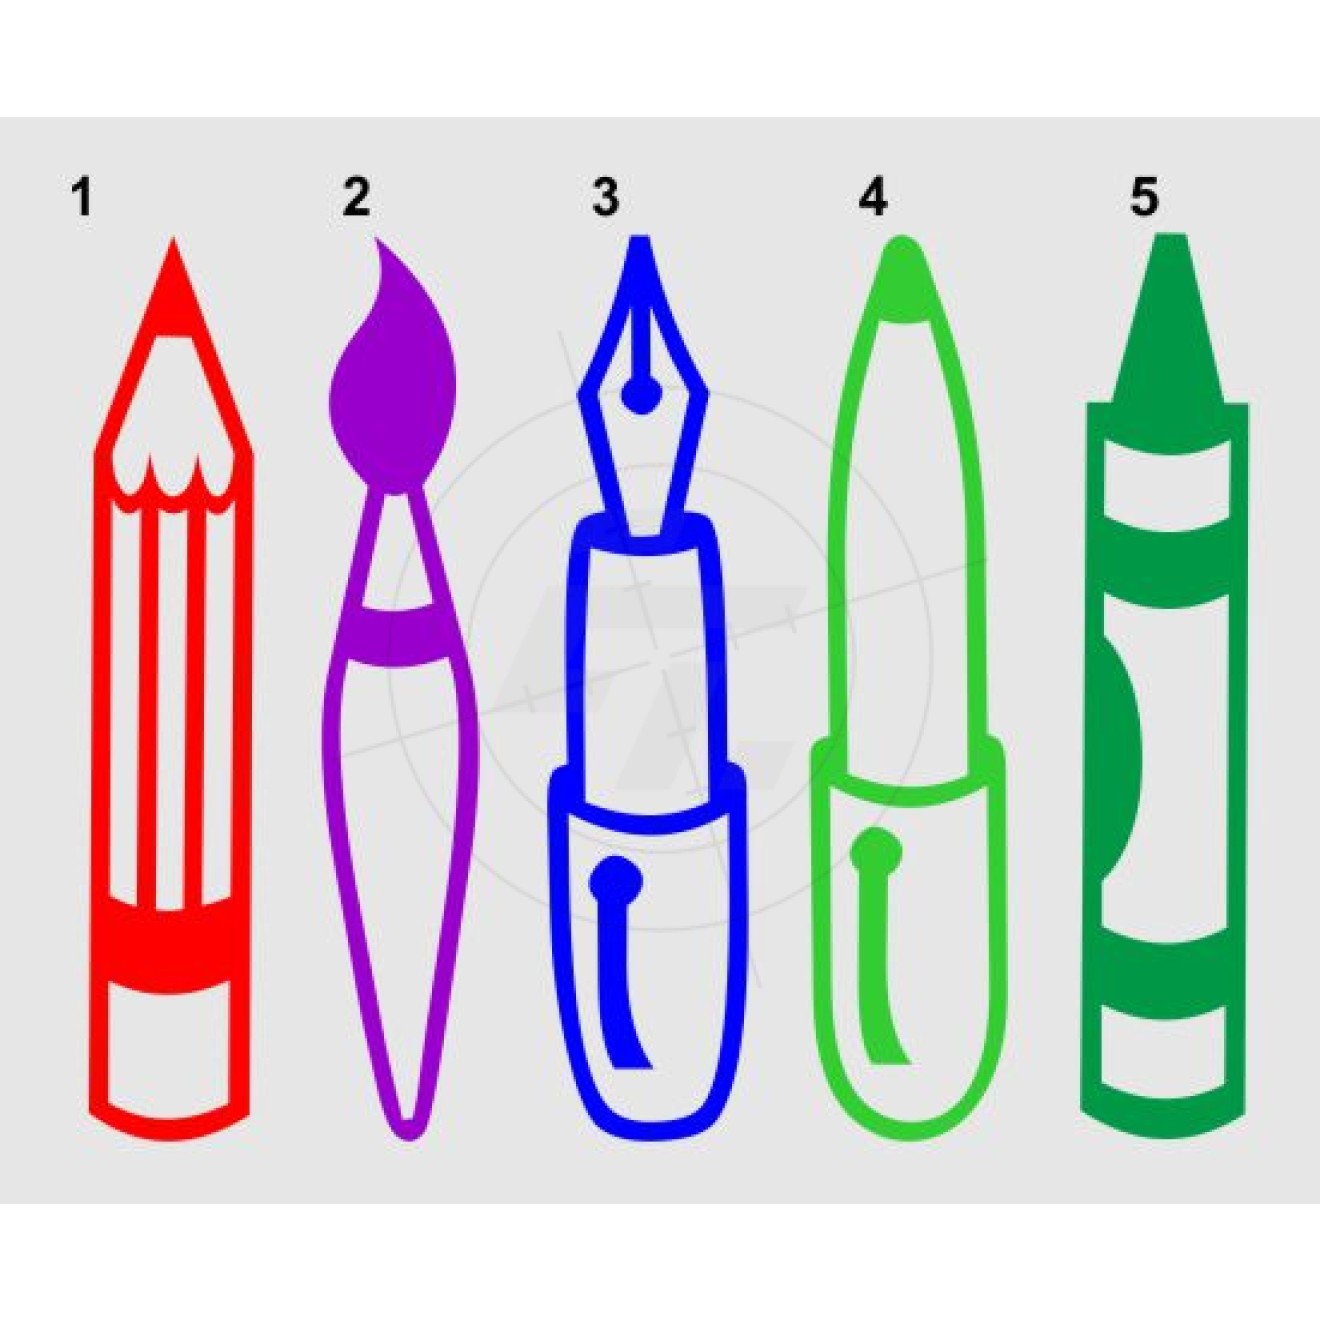 Pencil, brush, pen, pens, Edding